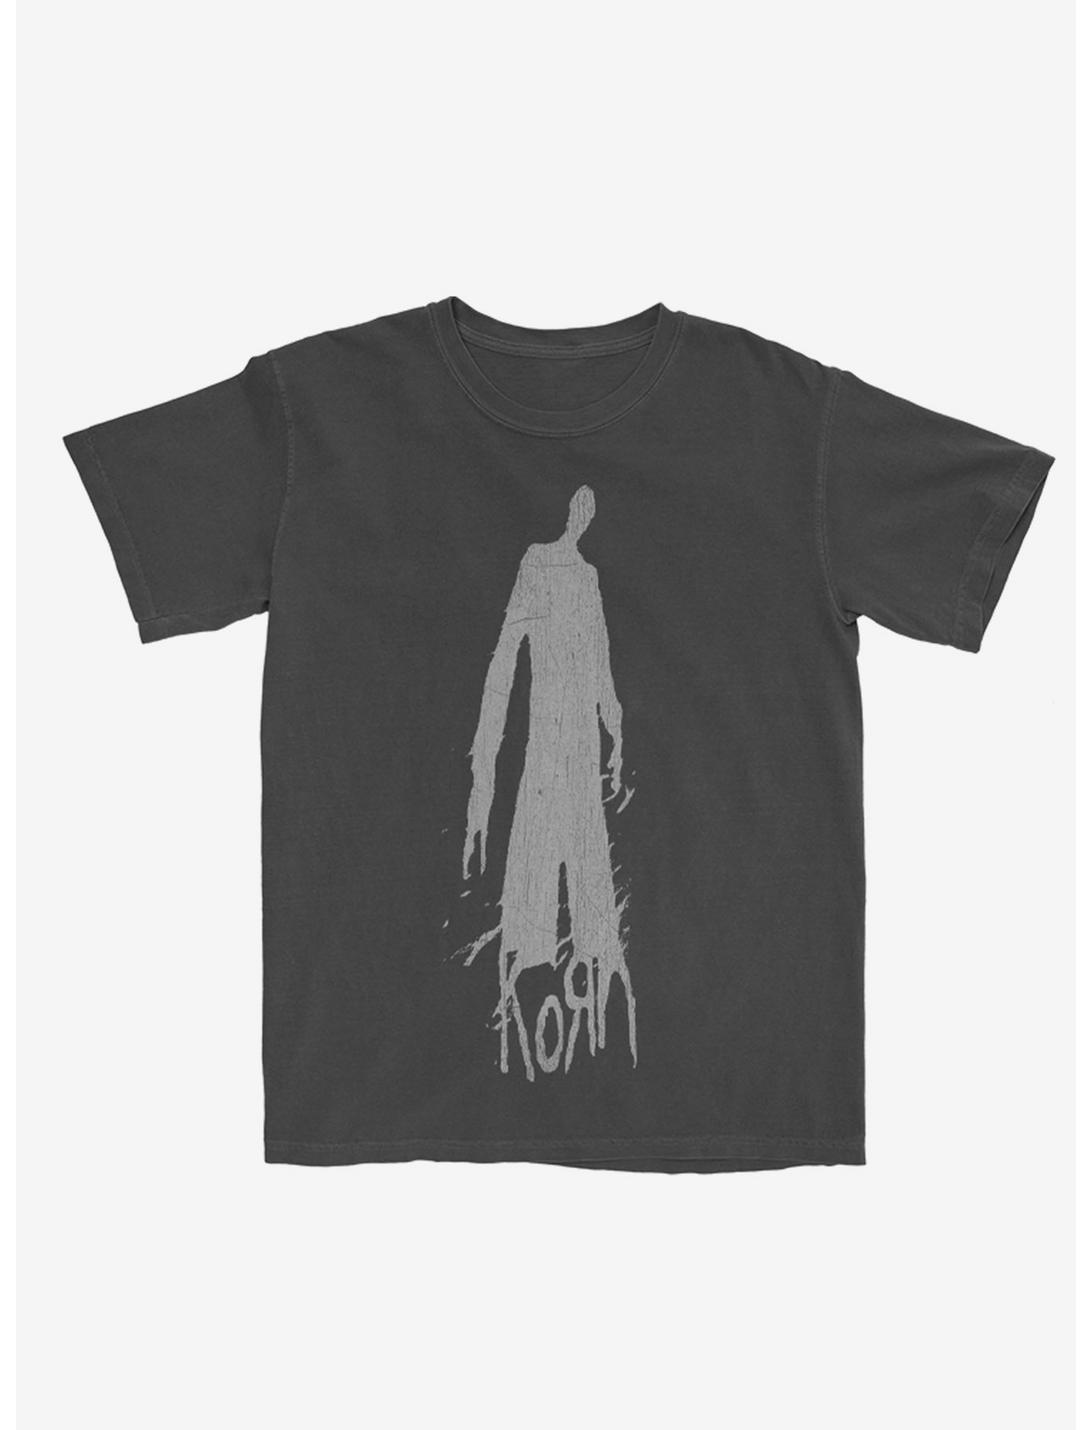 Korn Shadowman T-Shirt, CHARCOAL, hi-res